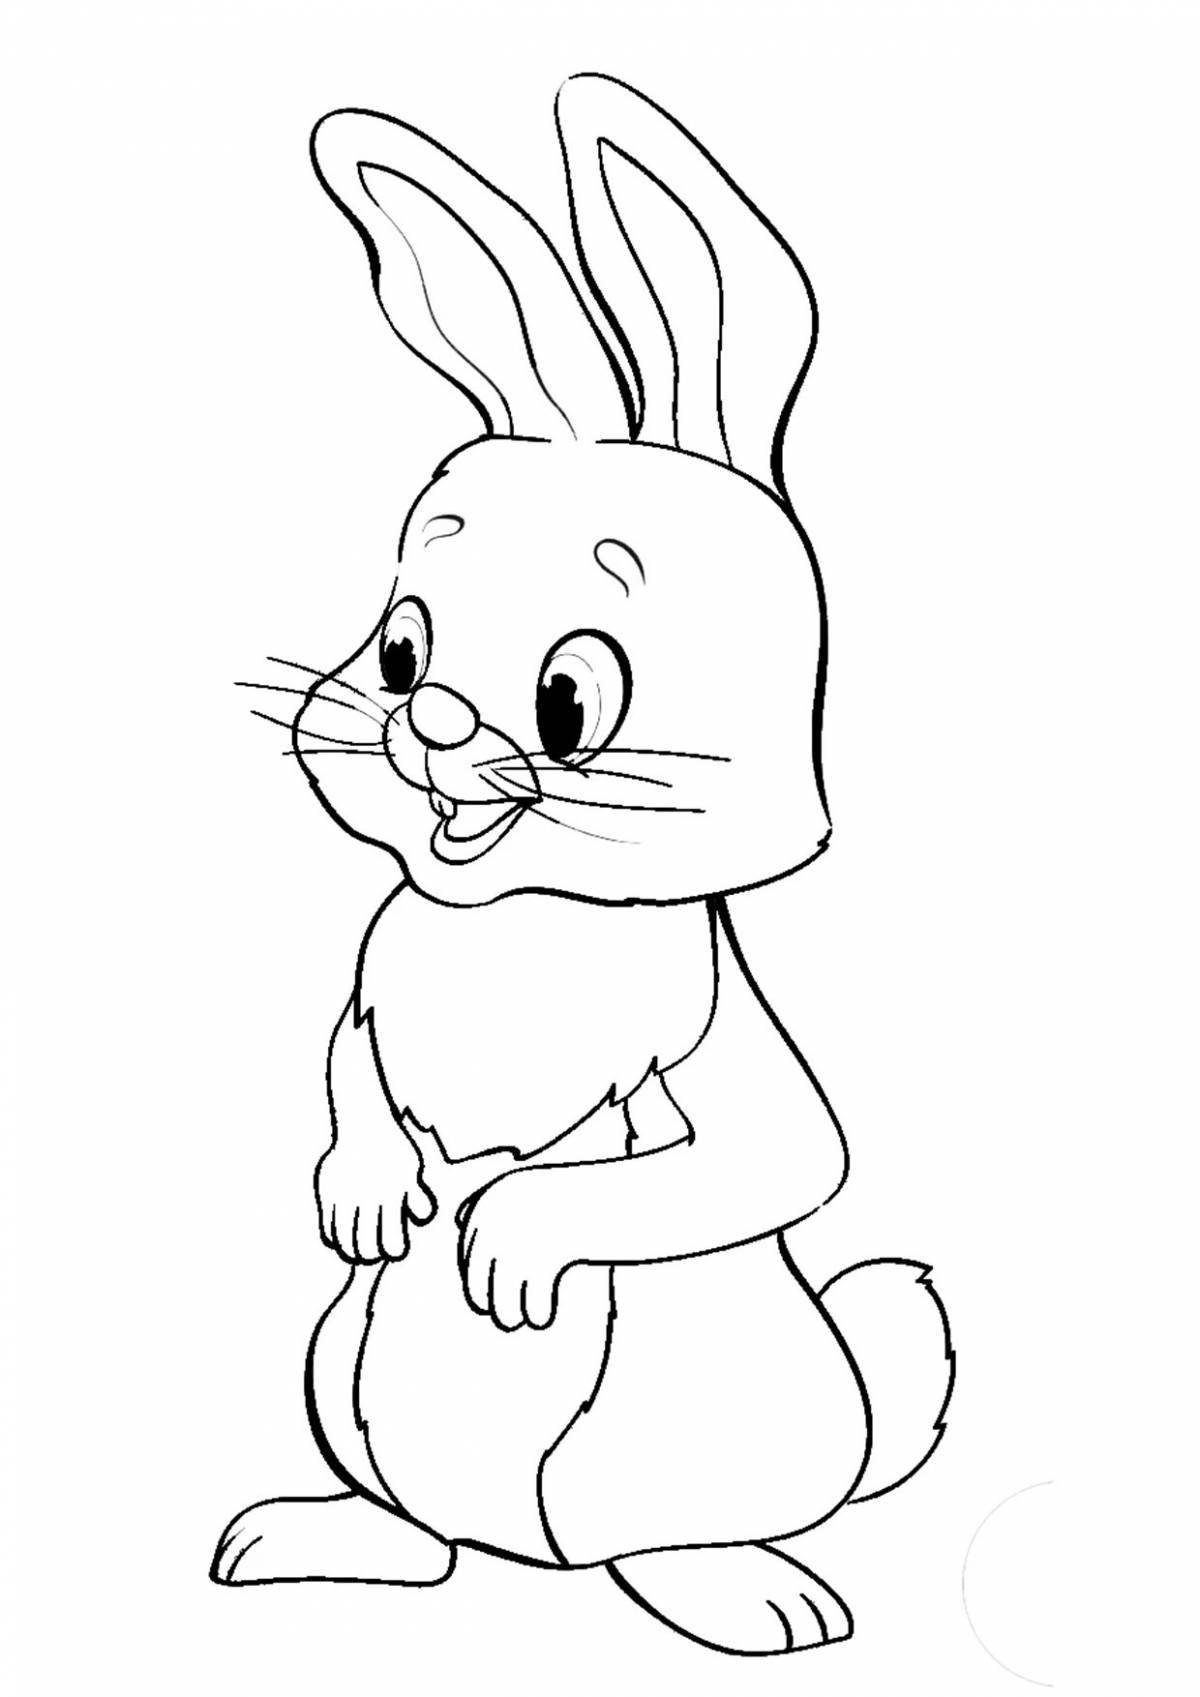 Увлекательная раскраска кролик для детей 2-3 лет